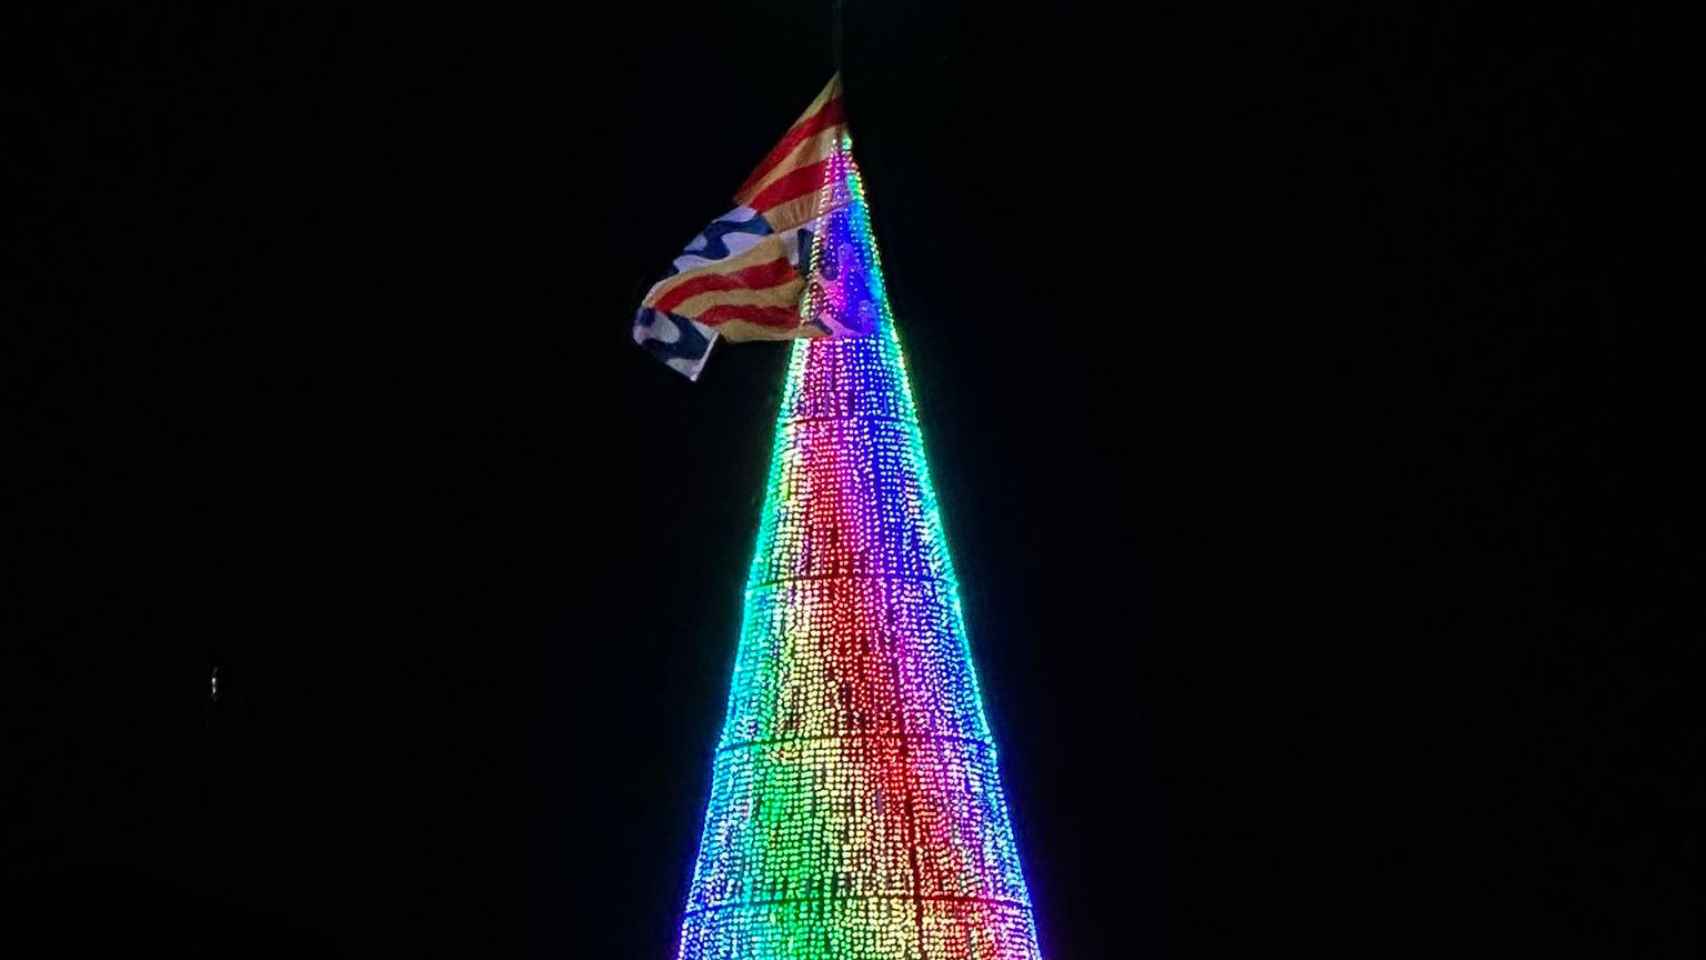 Árbol de Navidad de Badalona con las luces encendidas